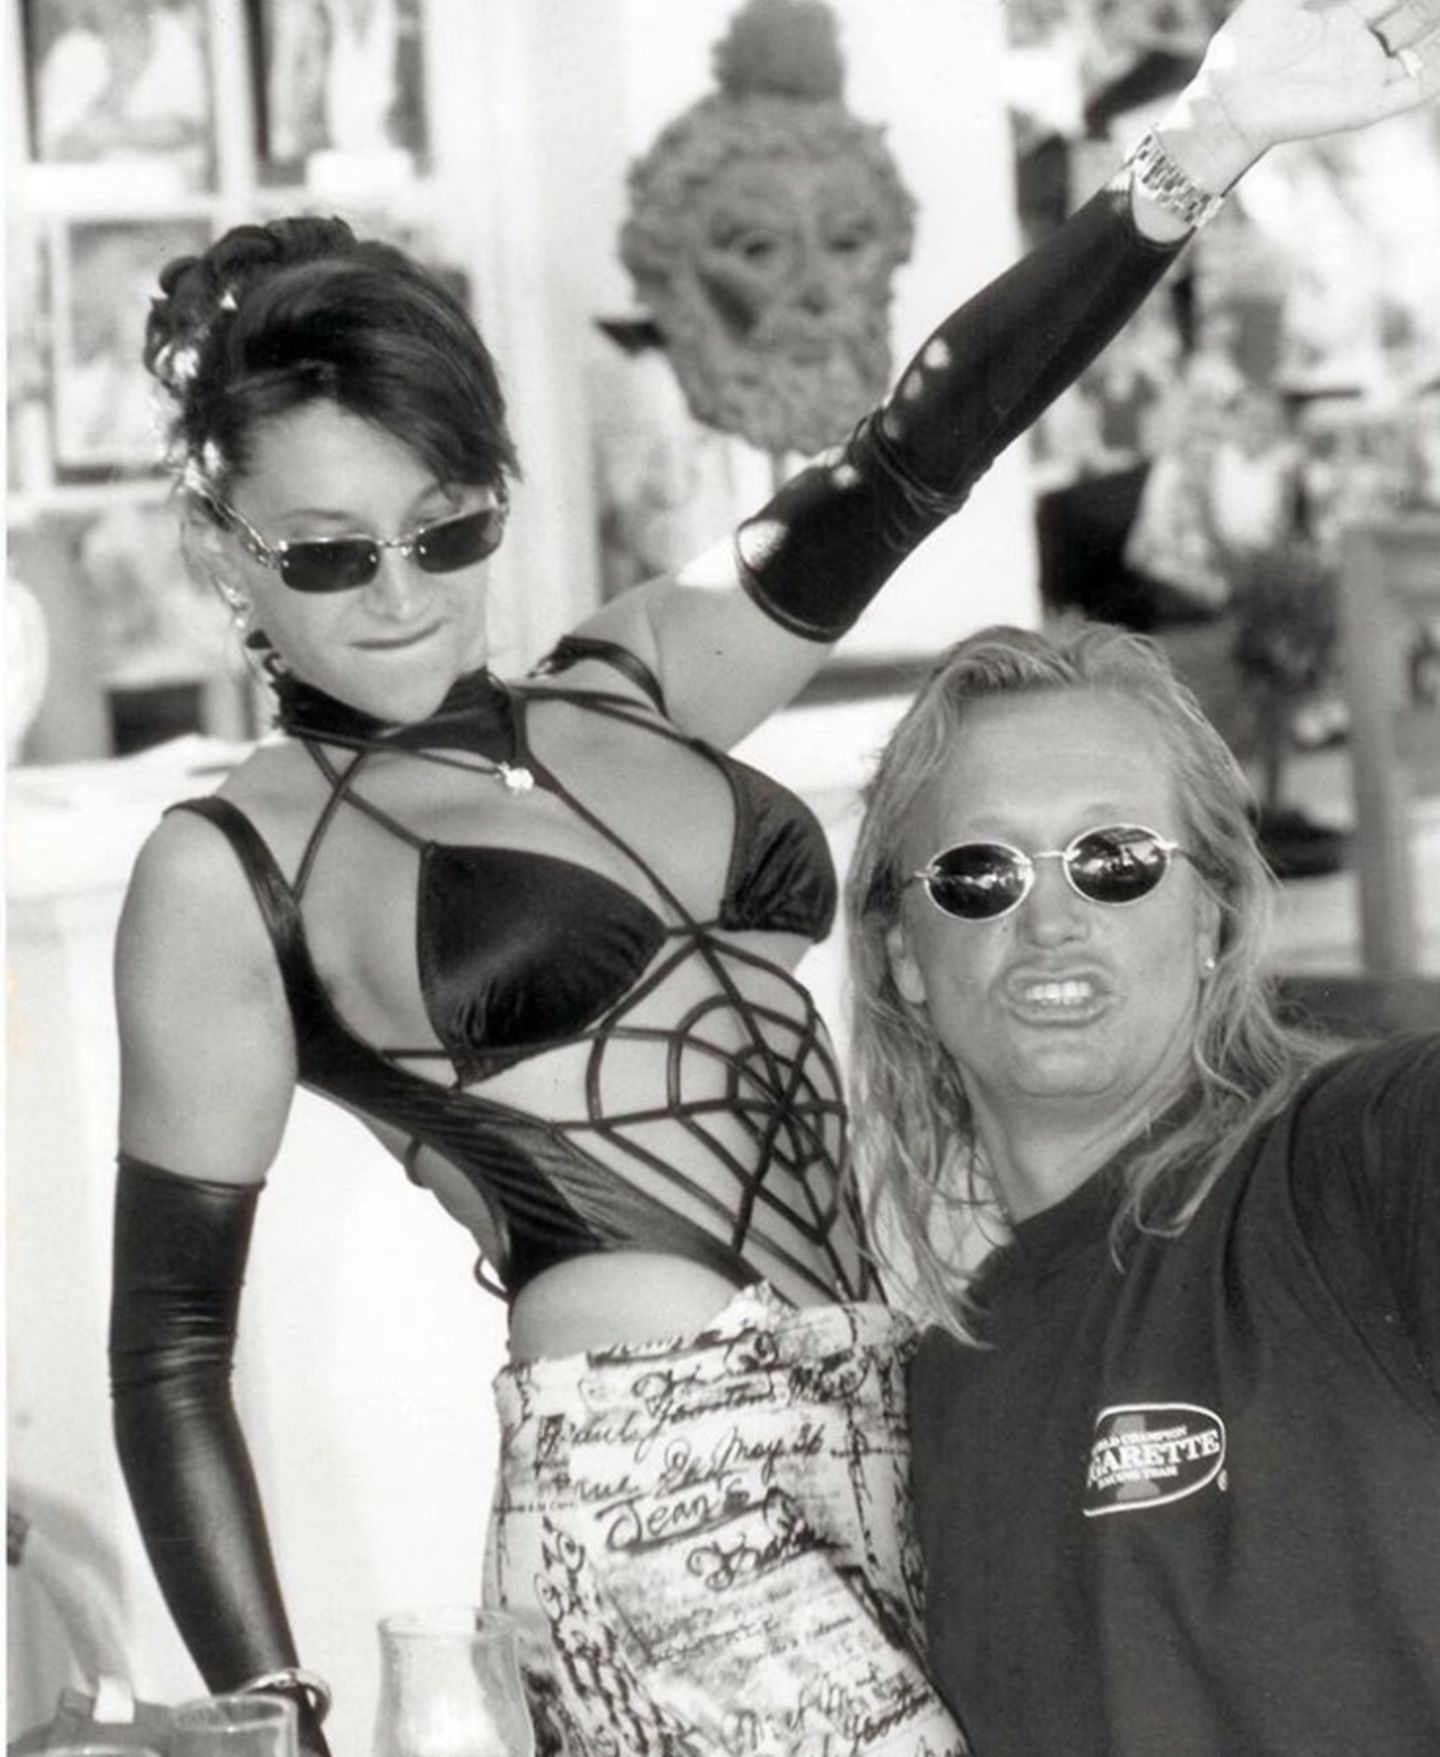 In 1999 schlüpft Carmen Geiss in einen wirklich extremen Monokini. Fast sieht es so aus, als würde sie mit Robert die Love Parade feiern.